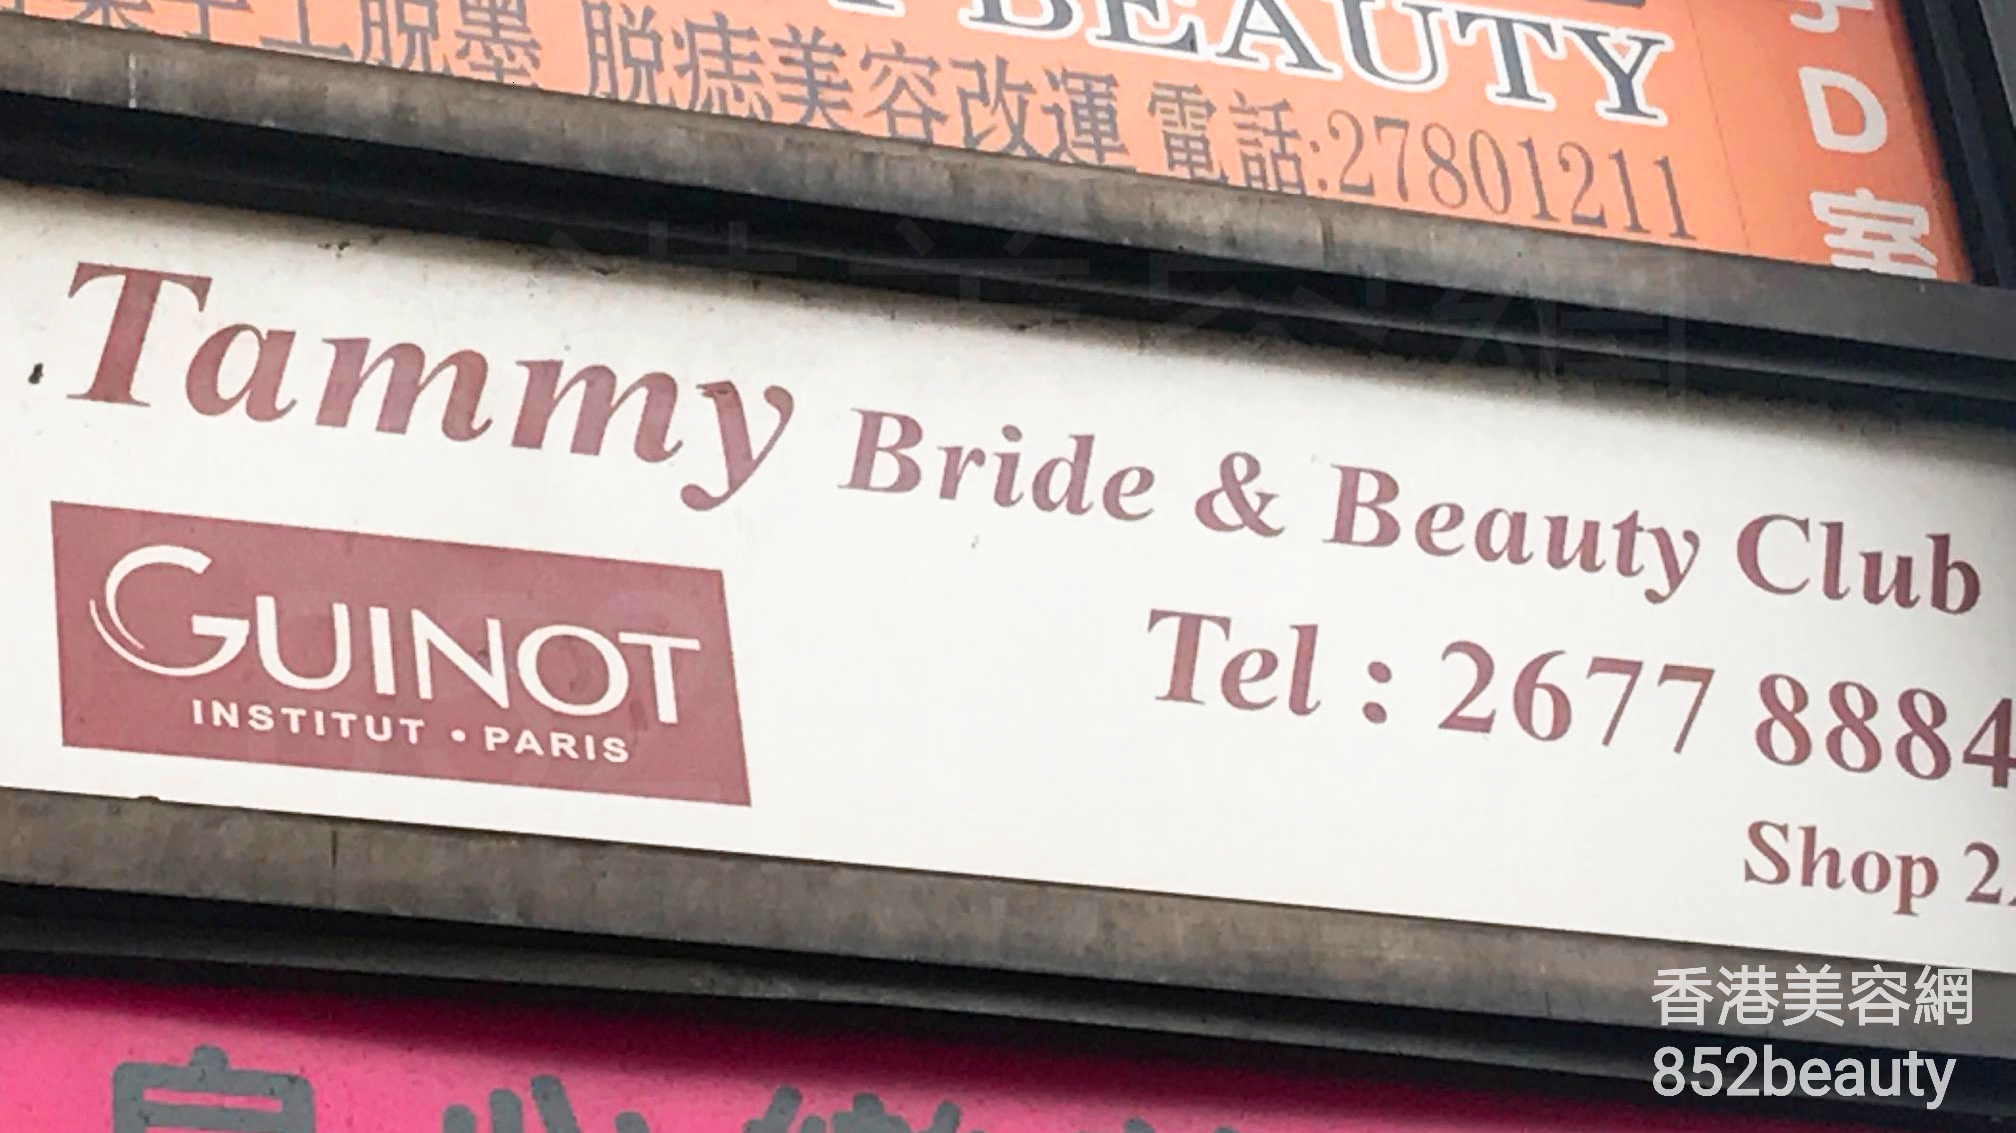 香港美容網 Hong Kong Beauty Salon 美容院 / 美容師: Tammy Bride & Beauty Club